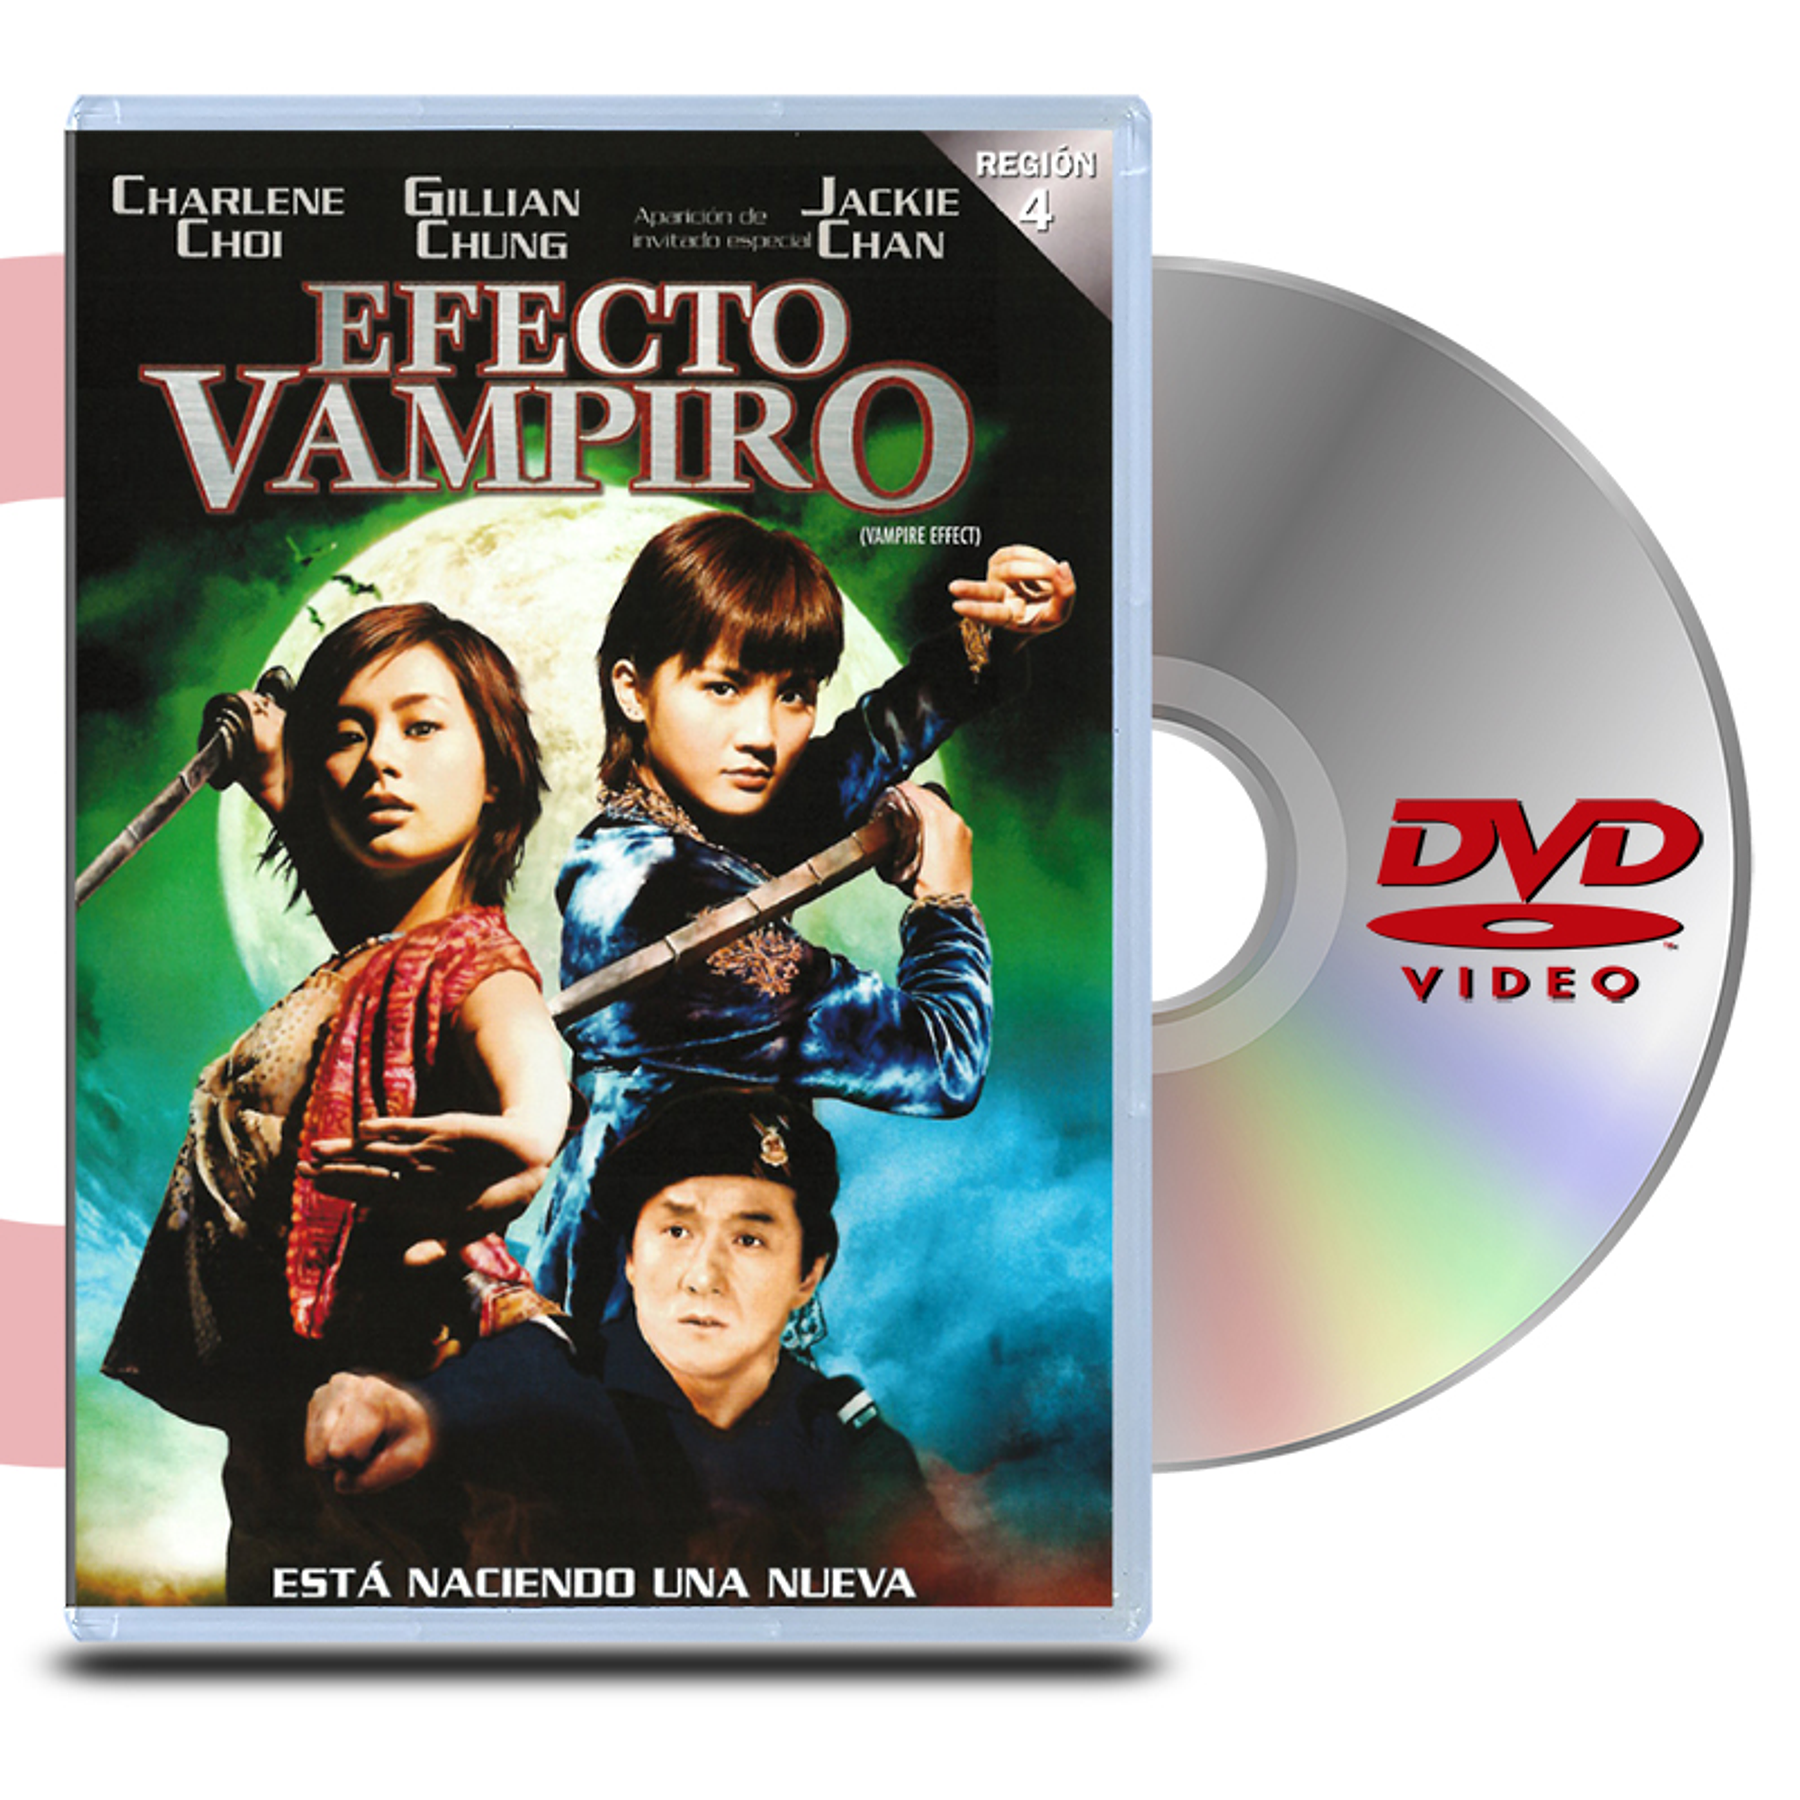 DVD EFECTO VAMPIRO